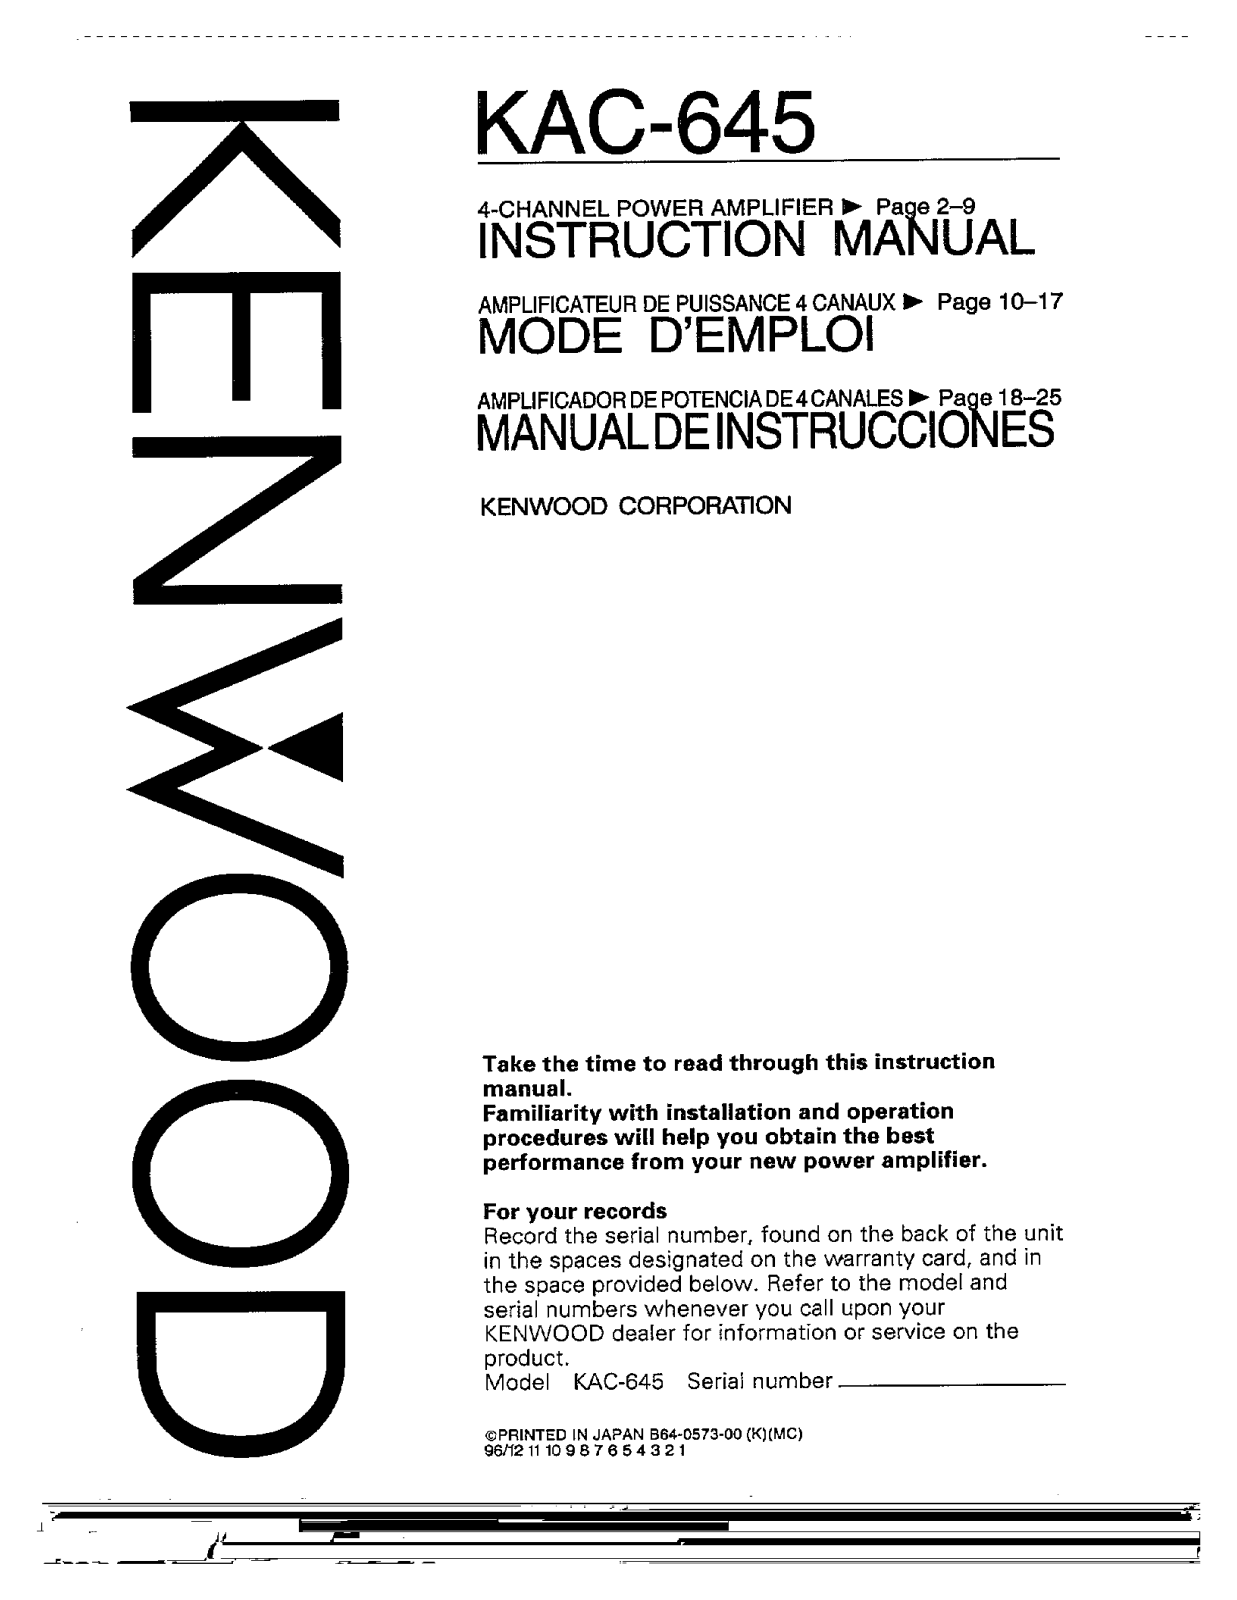 Kenwood KAC-645 User Manual